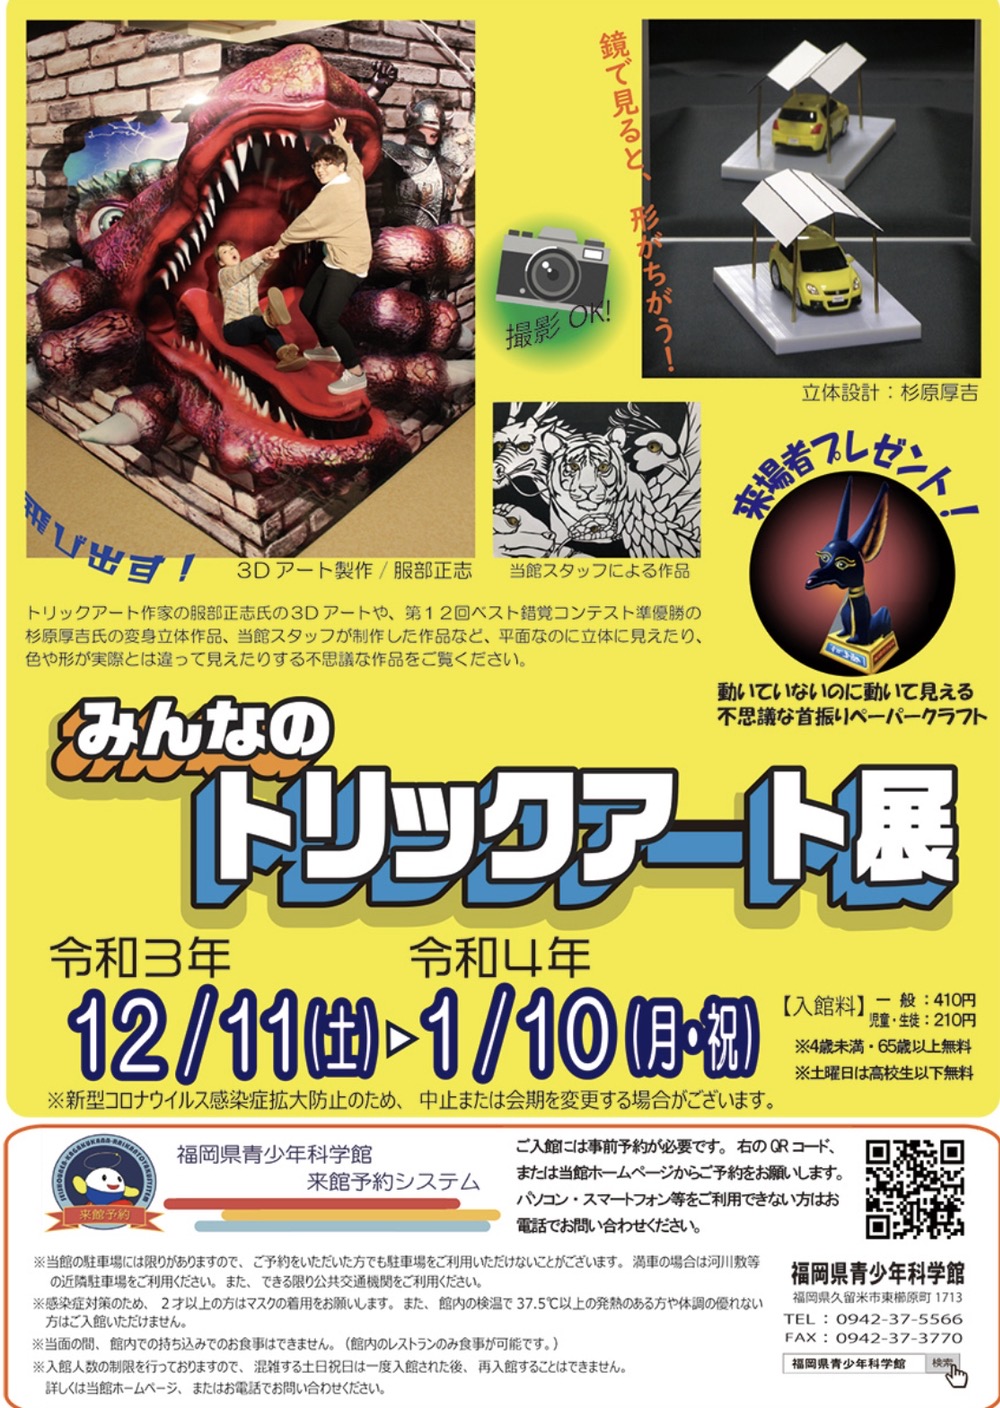 福岡県青少年科学館「みんなのトリックアート展」3Dアートや変身立体作品